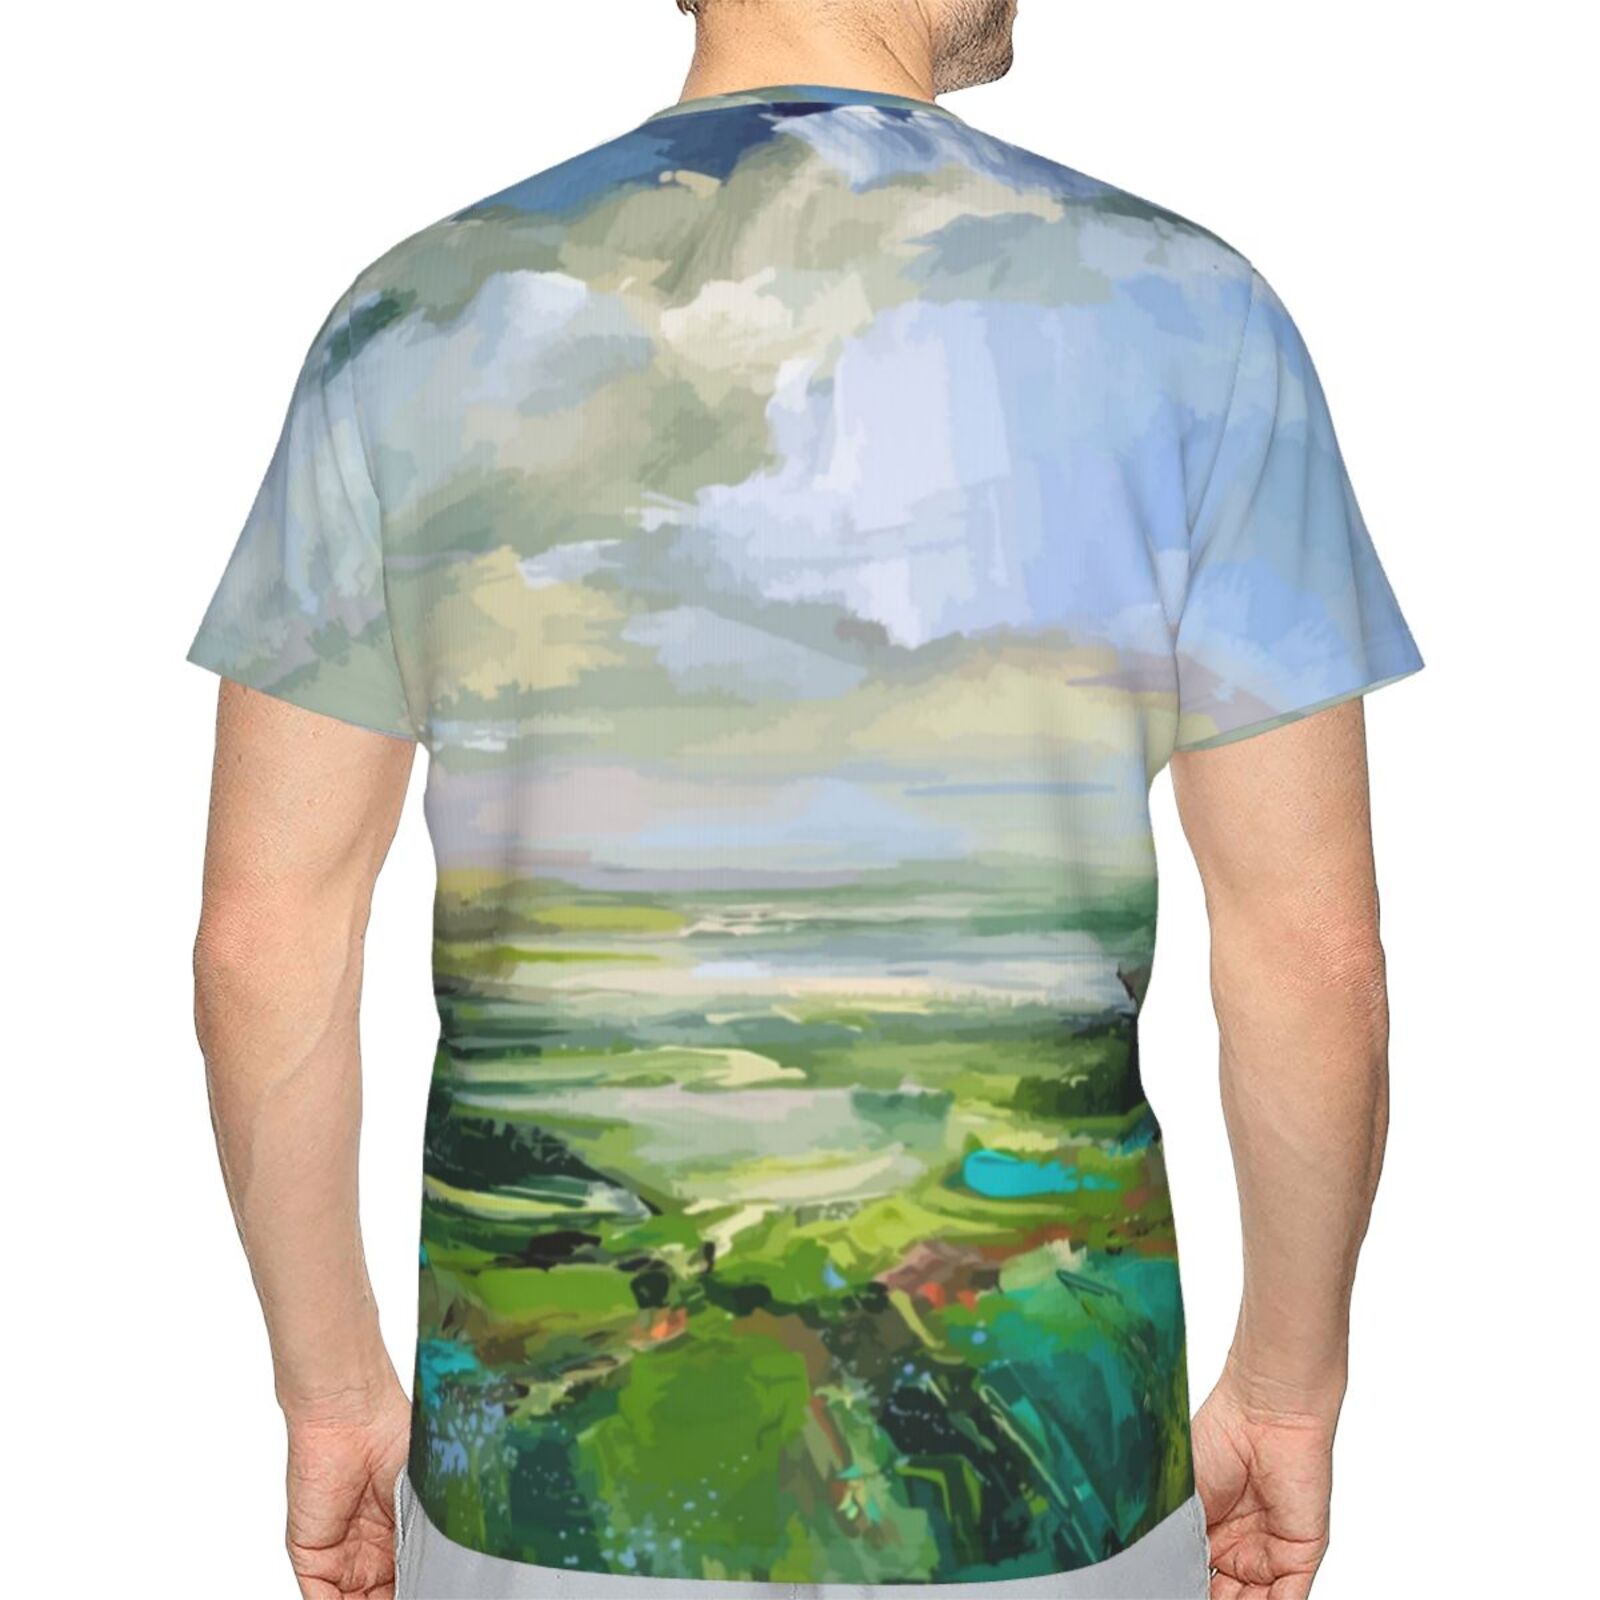 Klassisches Österreich T-shirt Mit Sommergrün-malelementen